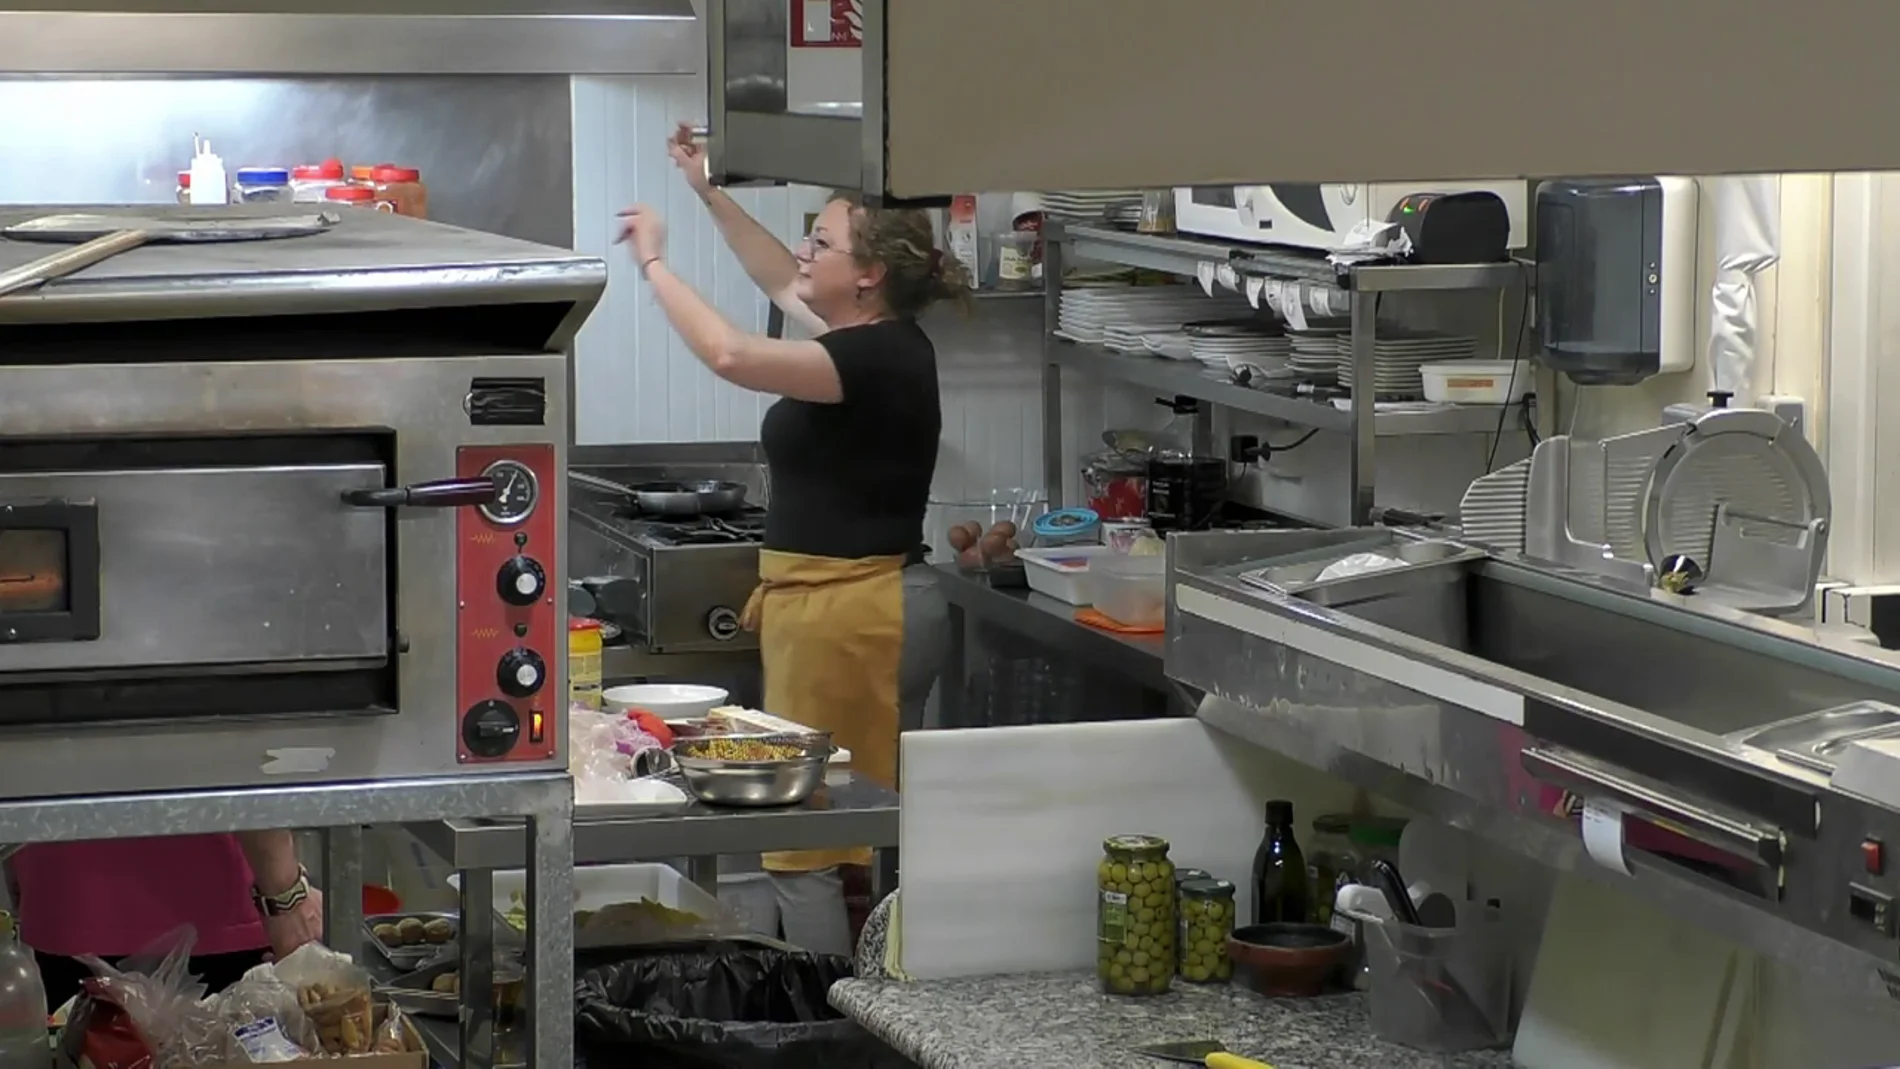 La cocinera de Bámbola sube la música en pleno servicio: "Me he tenido que poner a mi Merche para desfogar"